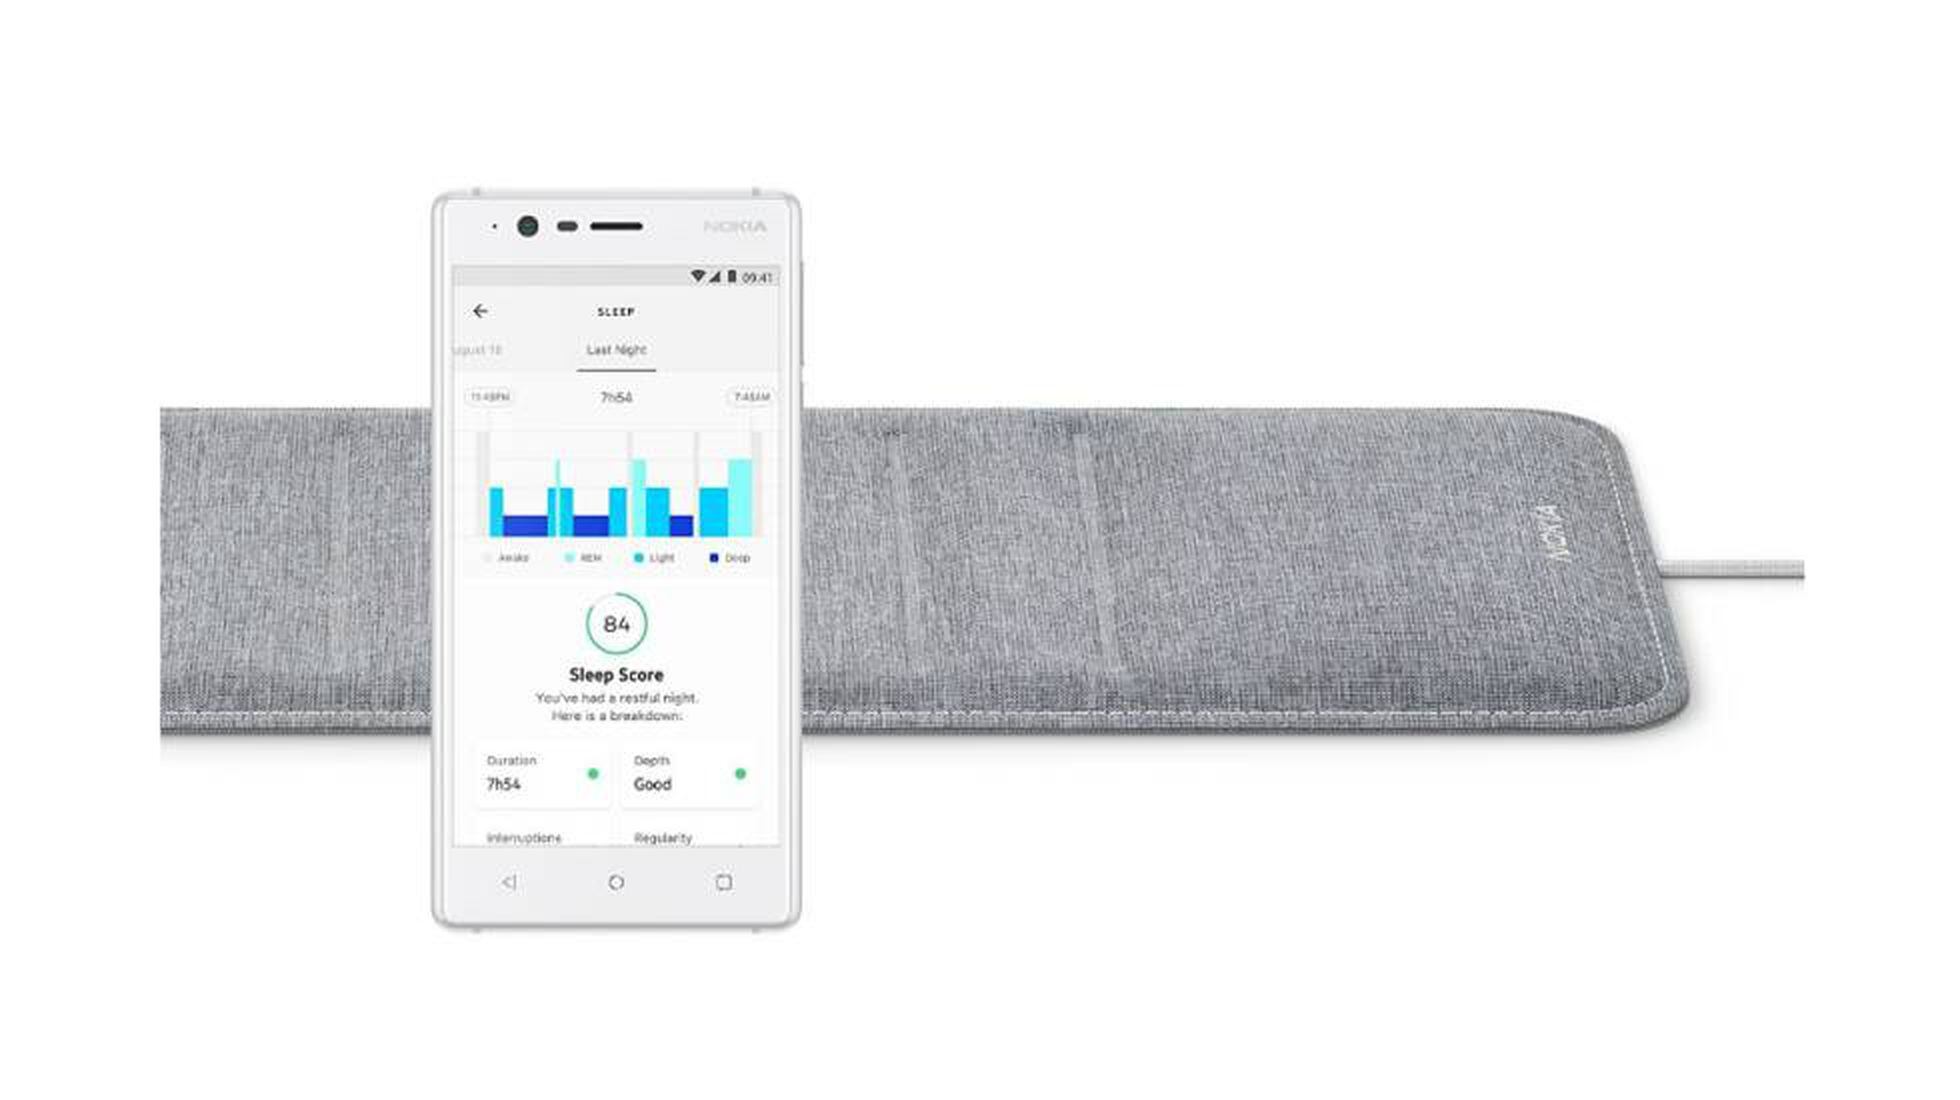 Tecnología para dormir mejor: los mejores aparatos para la calidad